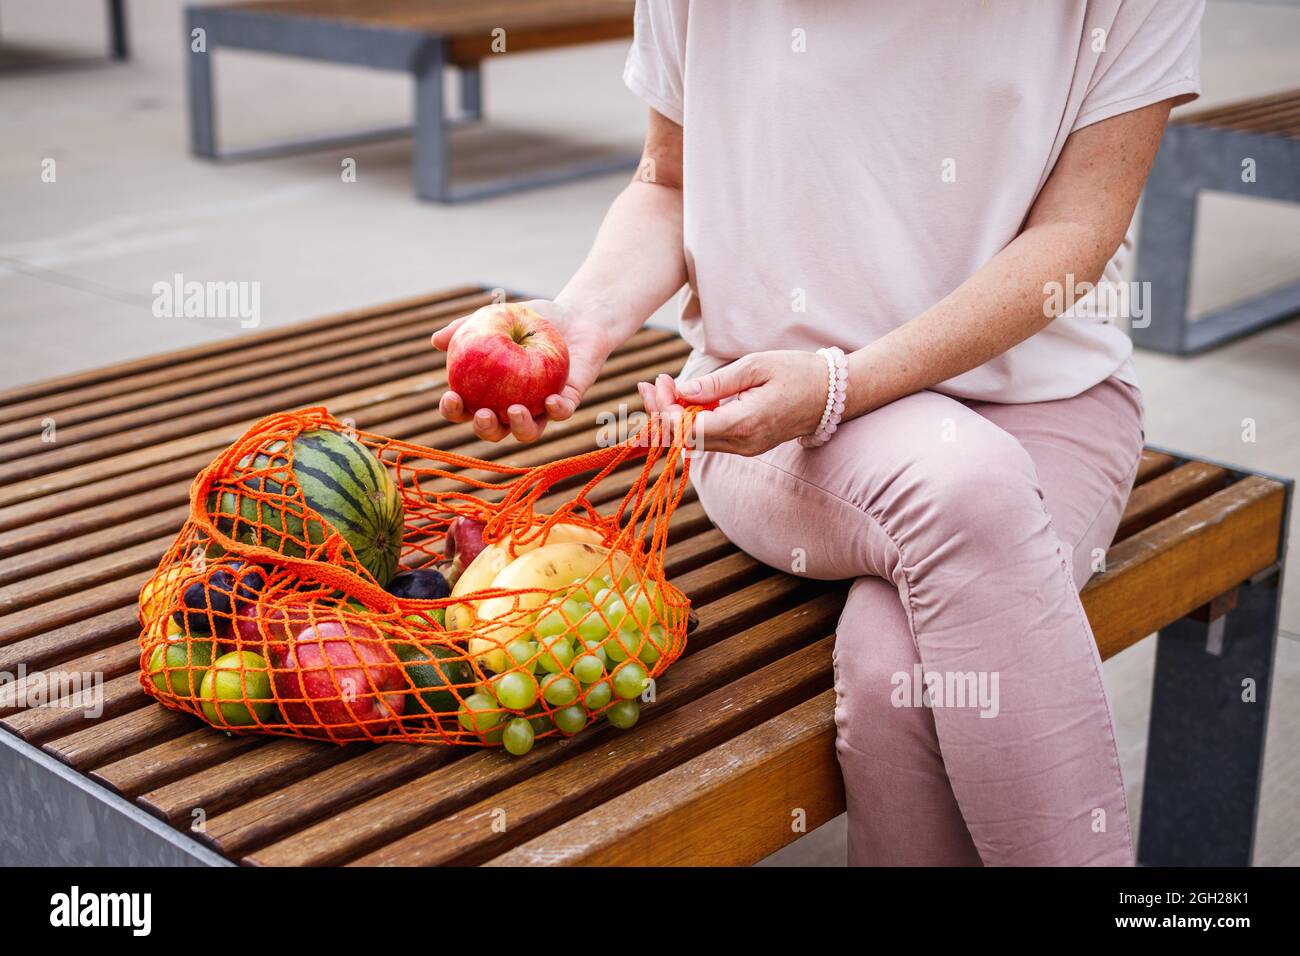 Femme avec sac en maille réutilisable assise sur un banc en ville. Se reposer au banc après avoir fait des achats de fruits au supermarché. Concept zéro déchet et sans plastique Banque D'Images